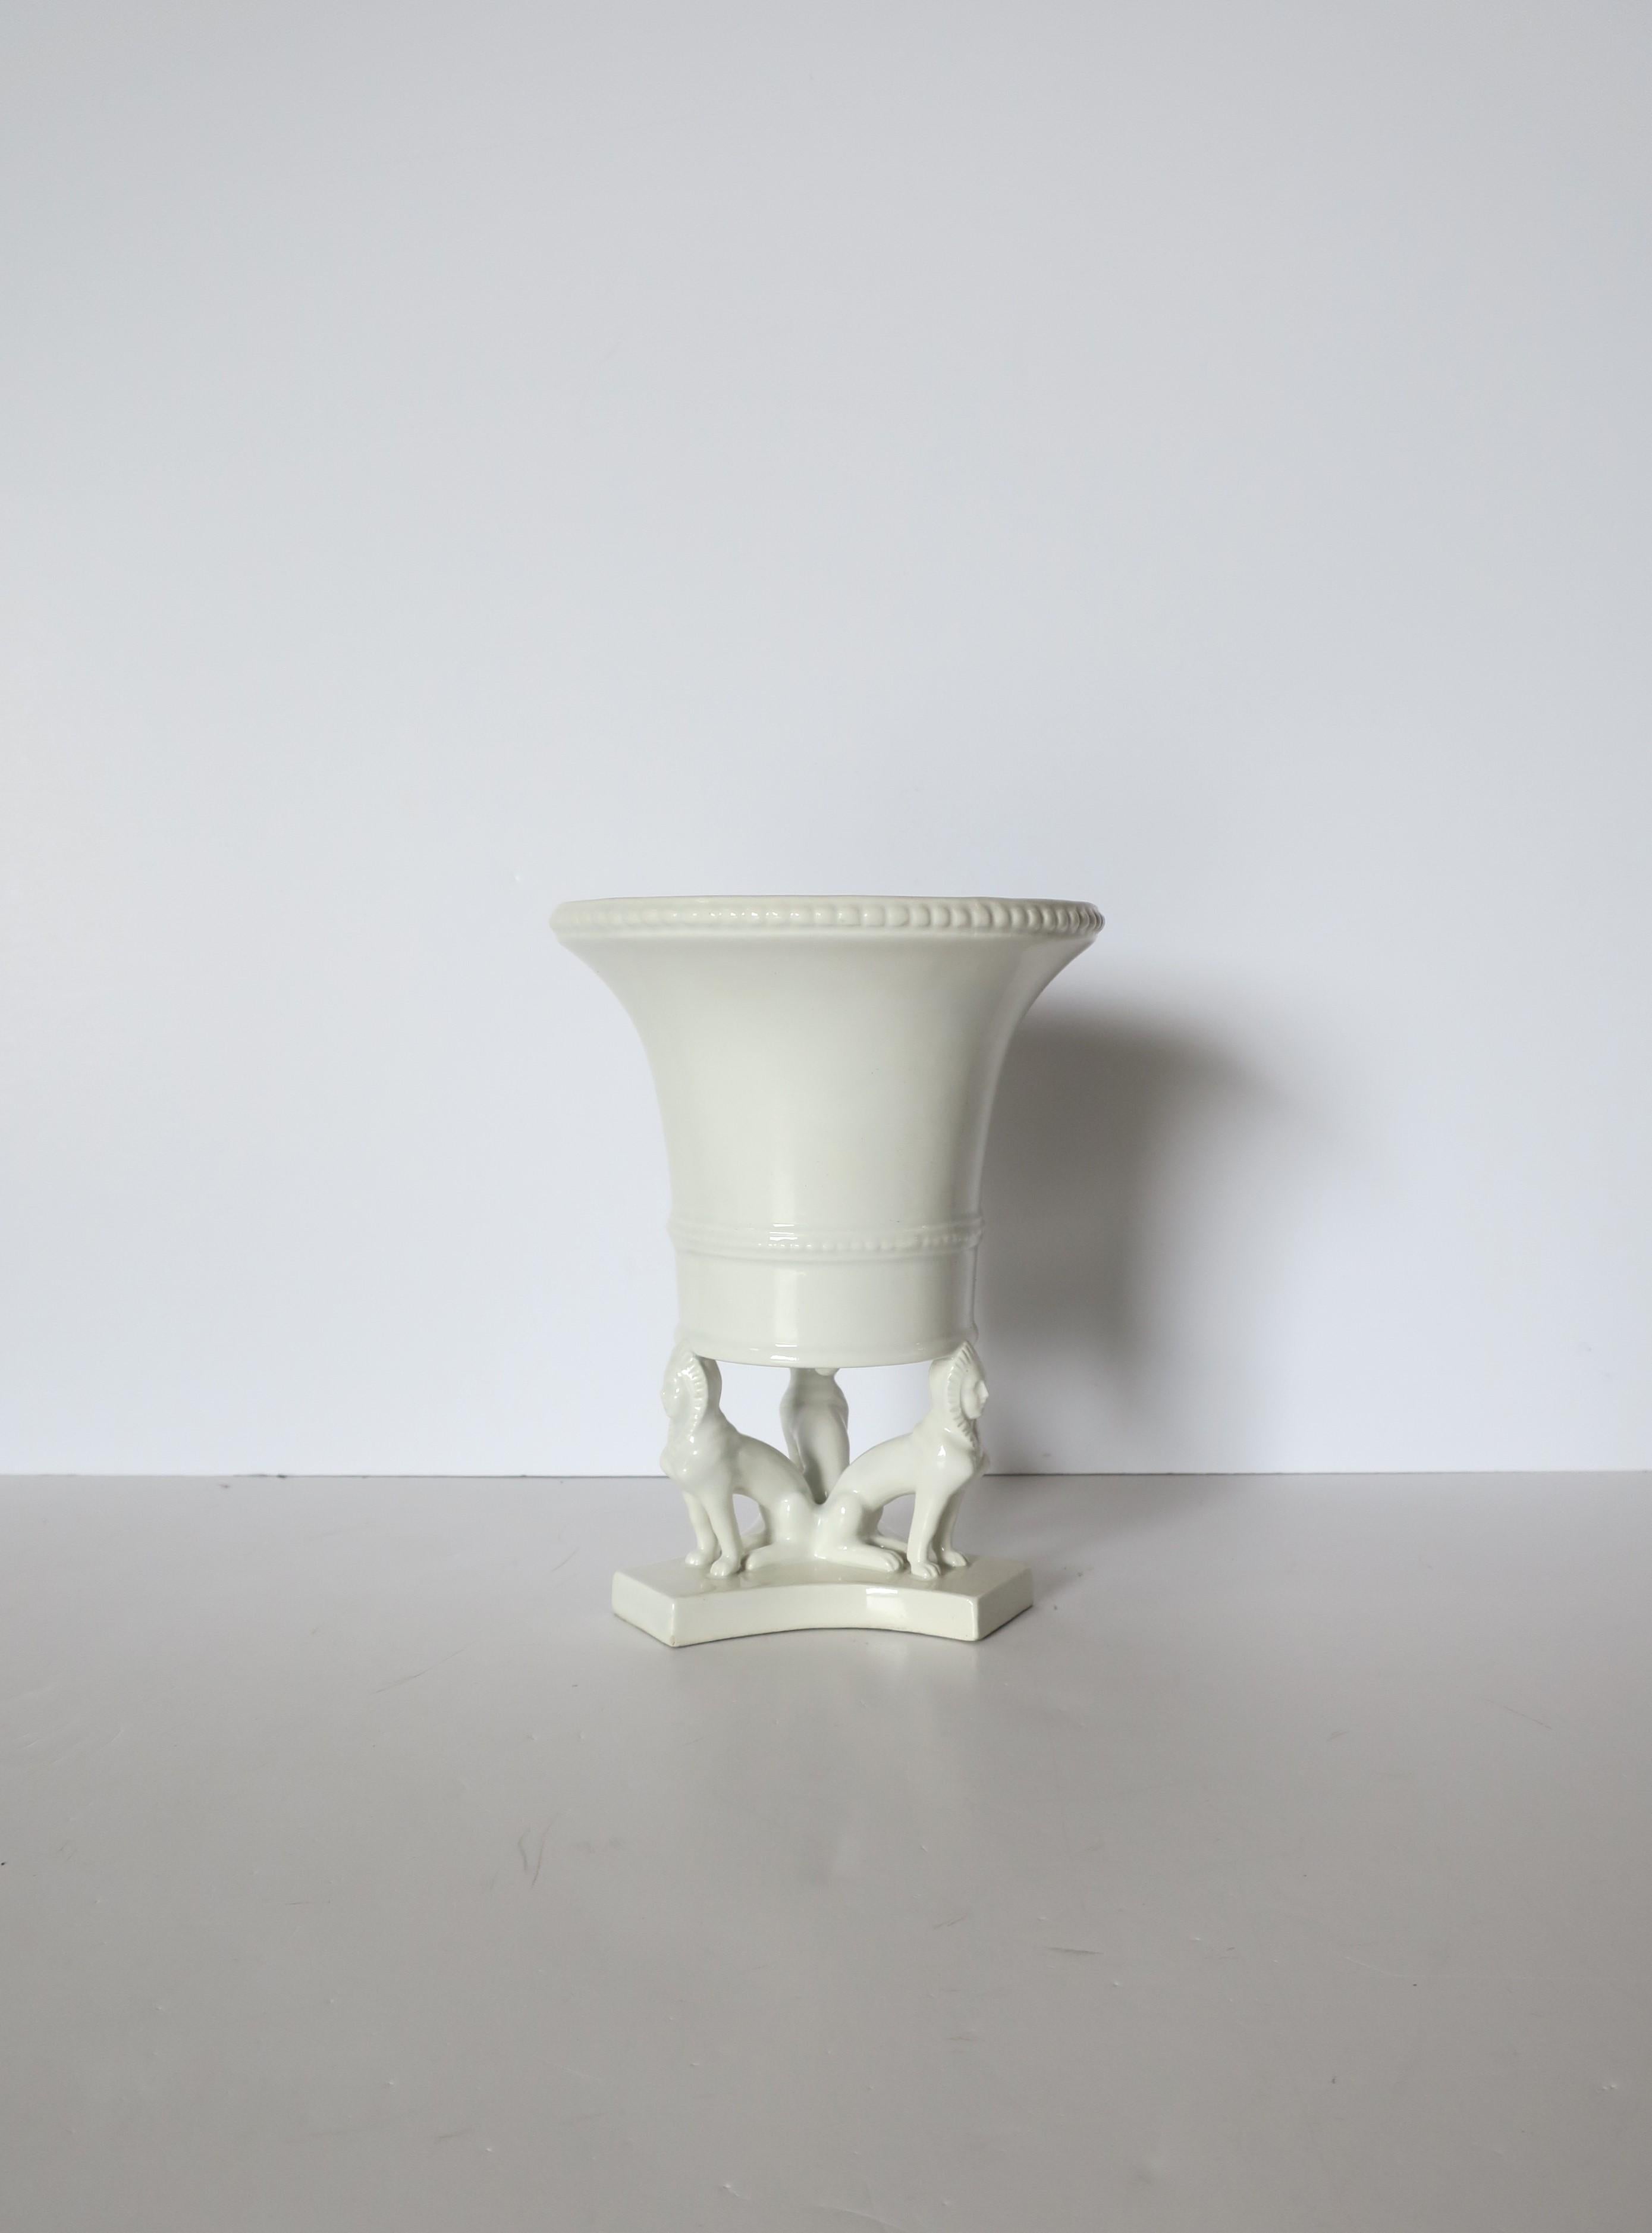 Vase urne ou cache-pot en céramique blanche italienne de style néo-égyptien, vers la fin du XXe siècle, Italie. Vase ou cache-pot (bac à fleurs ou à plantes) de couleur blanche avec trois chiens pharaons égyptiens autour de la base. Magnifique en